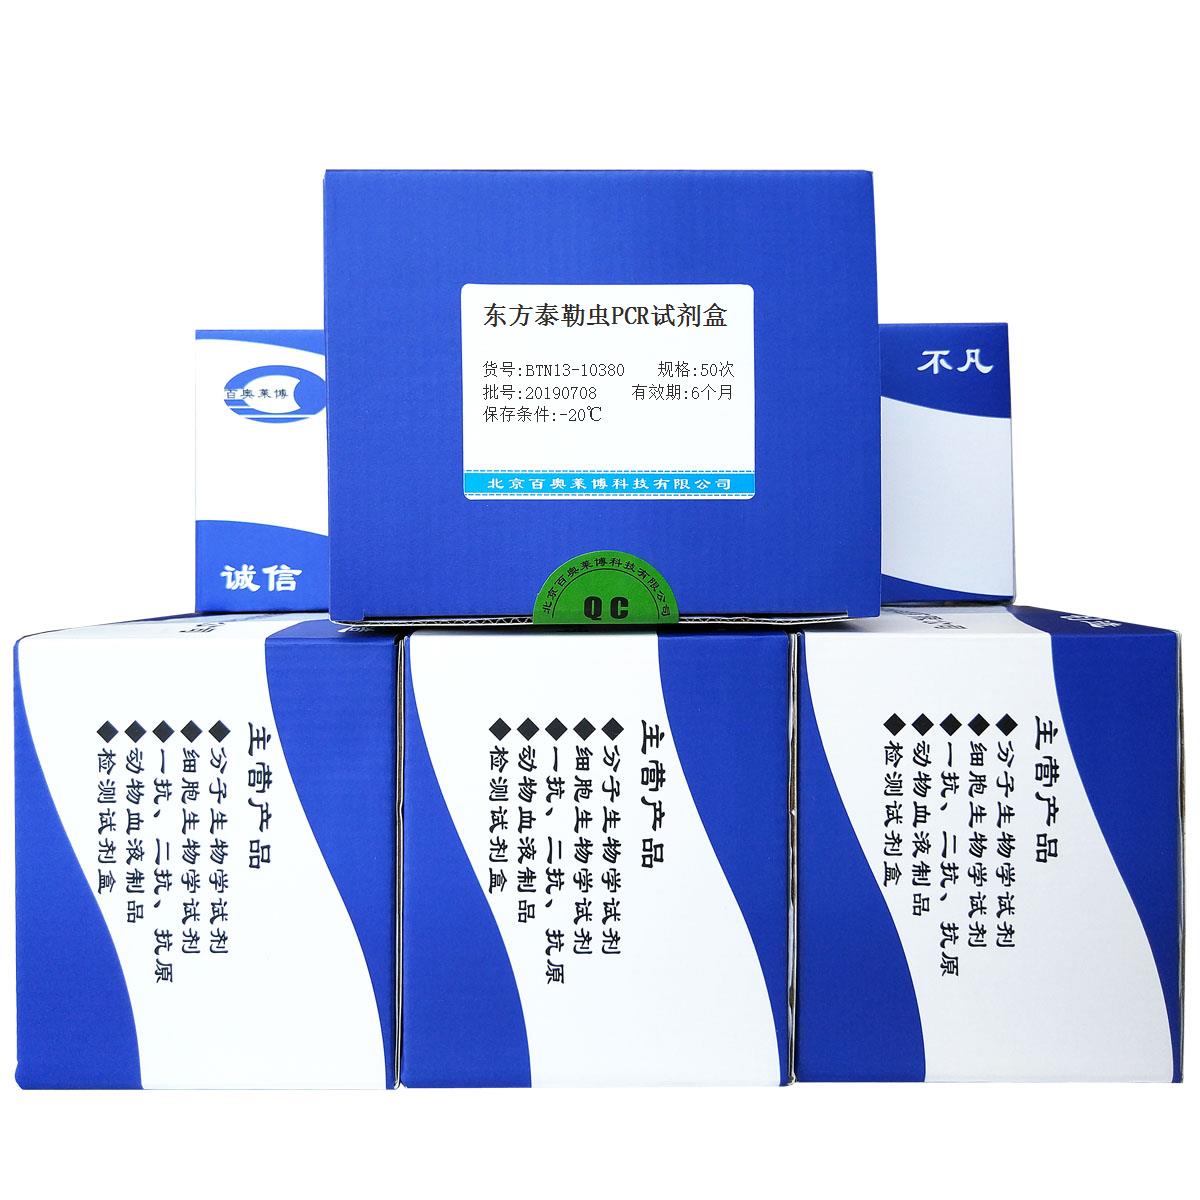 东方泰勒虫PCR试剂盒优惠促销